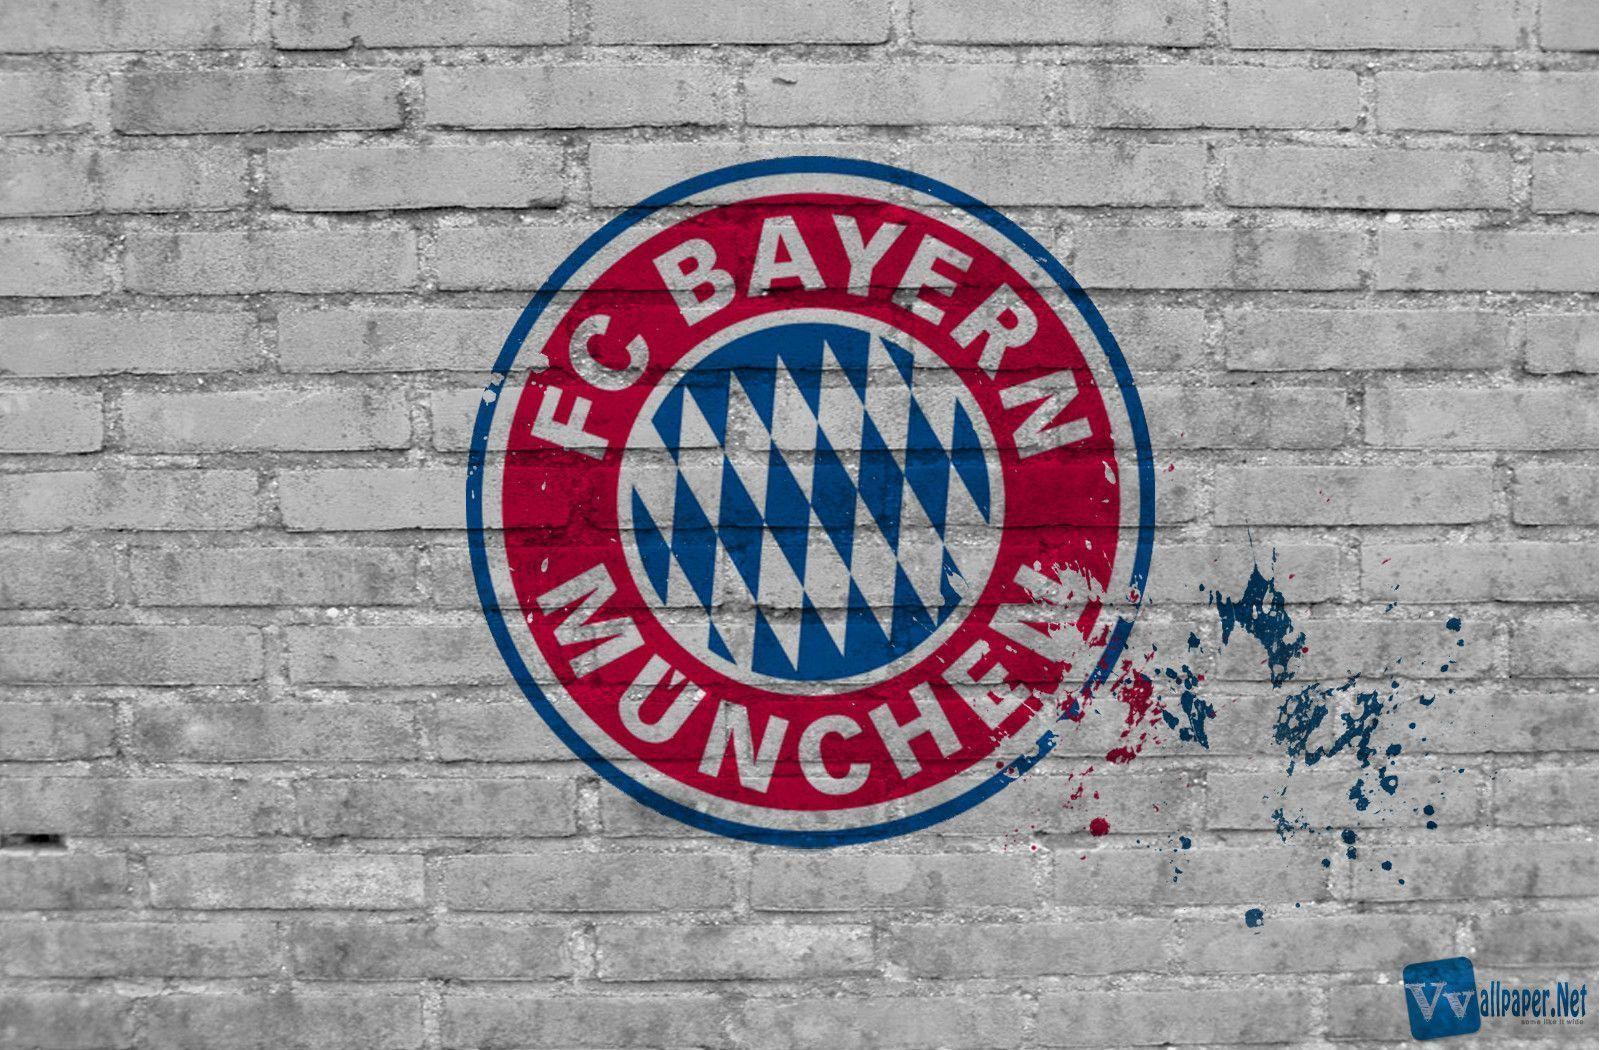 FC Bayern Munich Wallpaper. HD Wallpaper Early